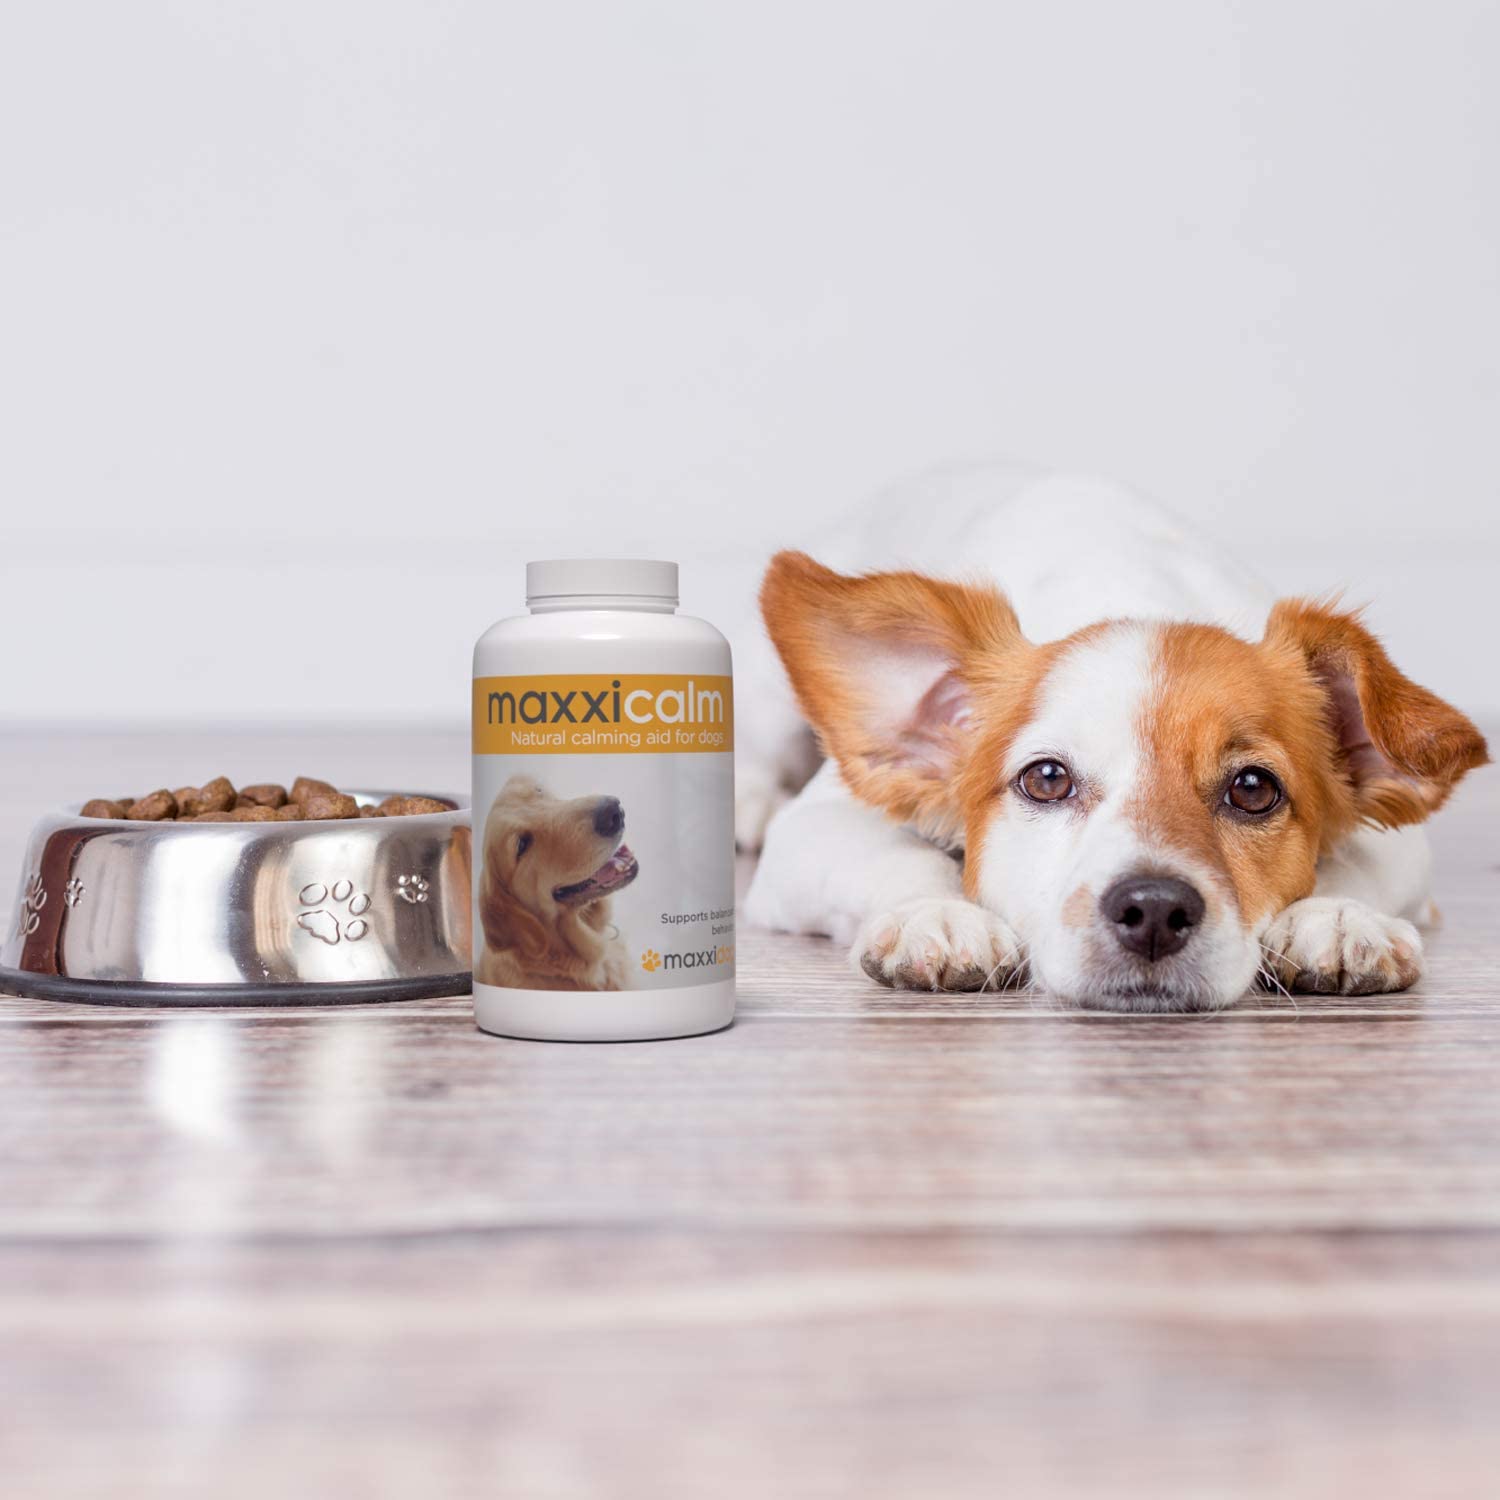  maxxidog - maxxicalm - Ayuda Calmante para Perros – Alivia el Estrés y la Ansiedad - Ingredientes Naturales - No somnoliento - 120 Comprimidos 